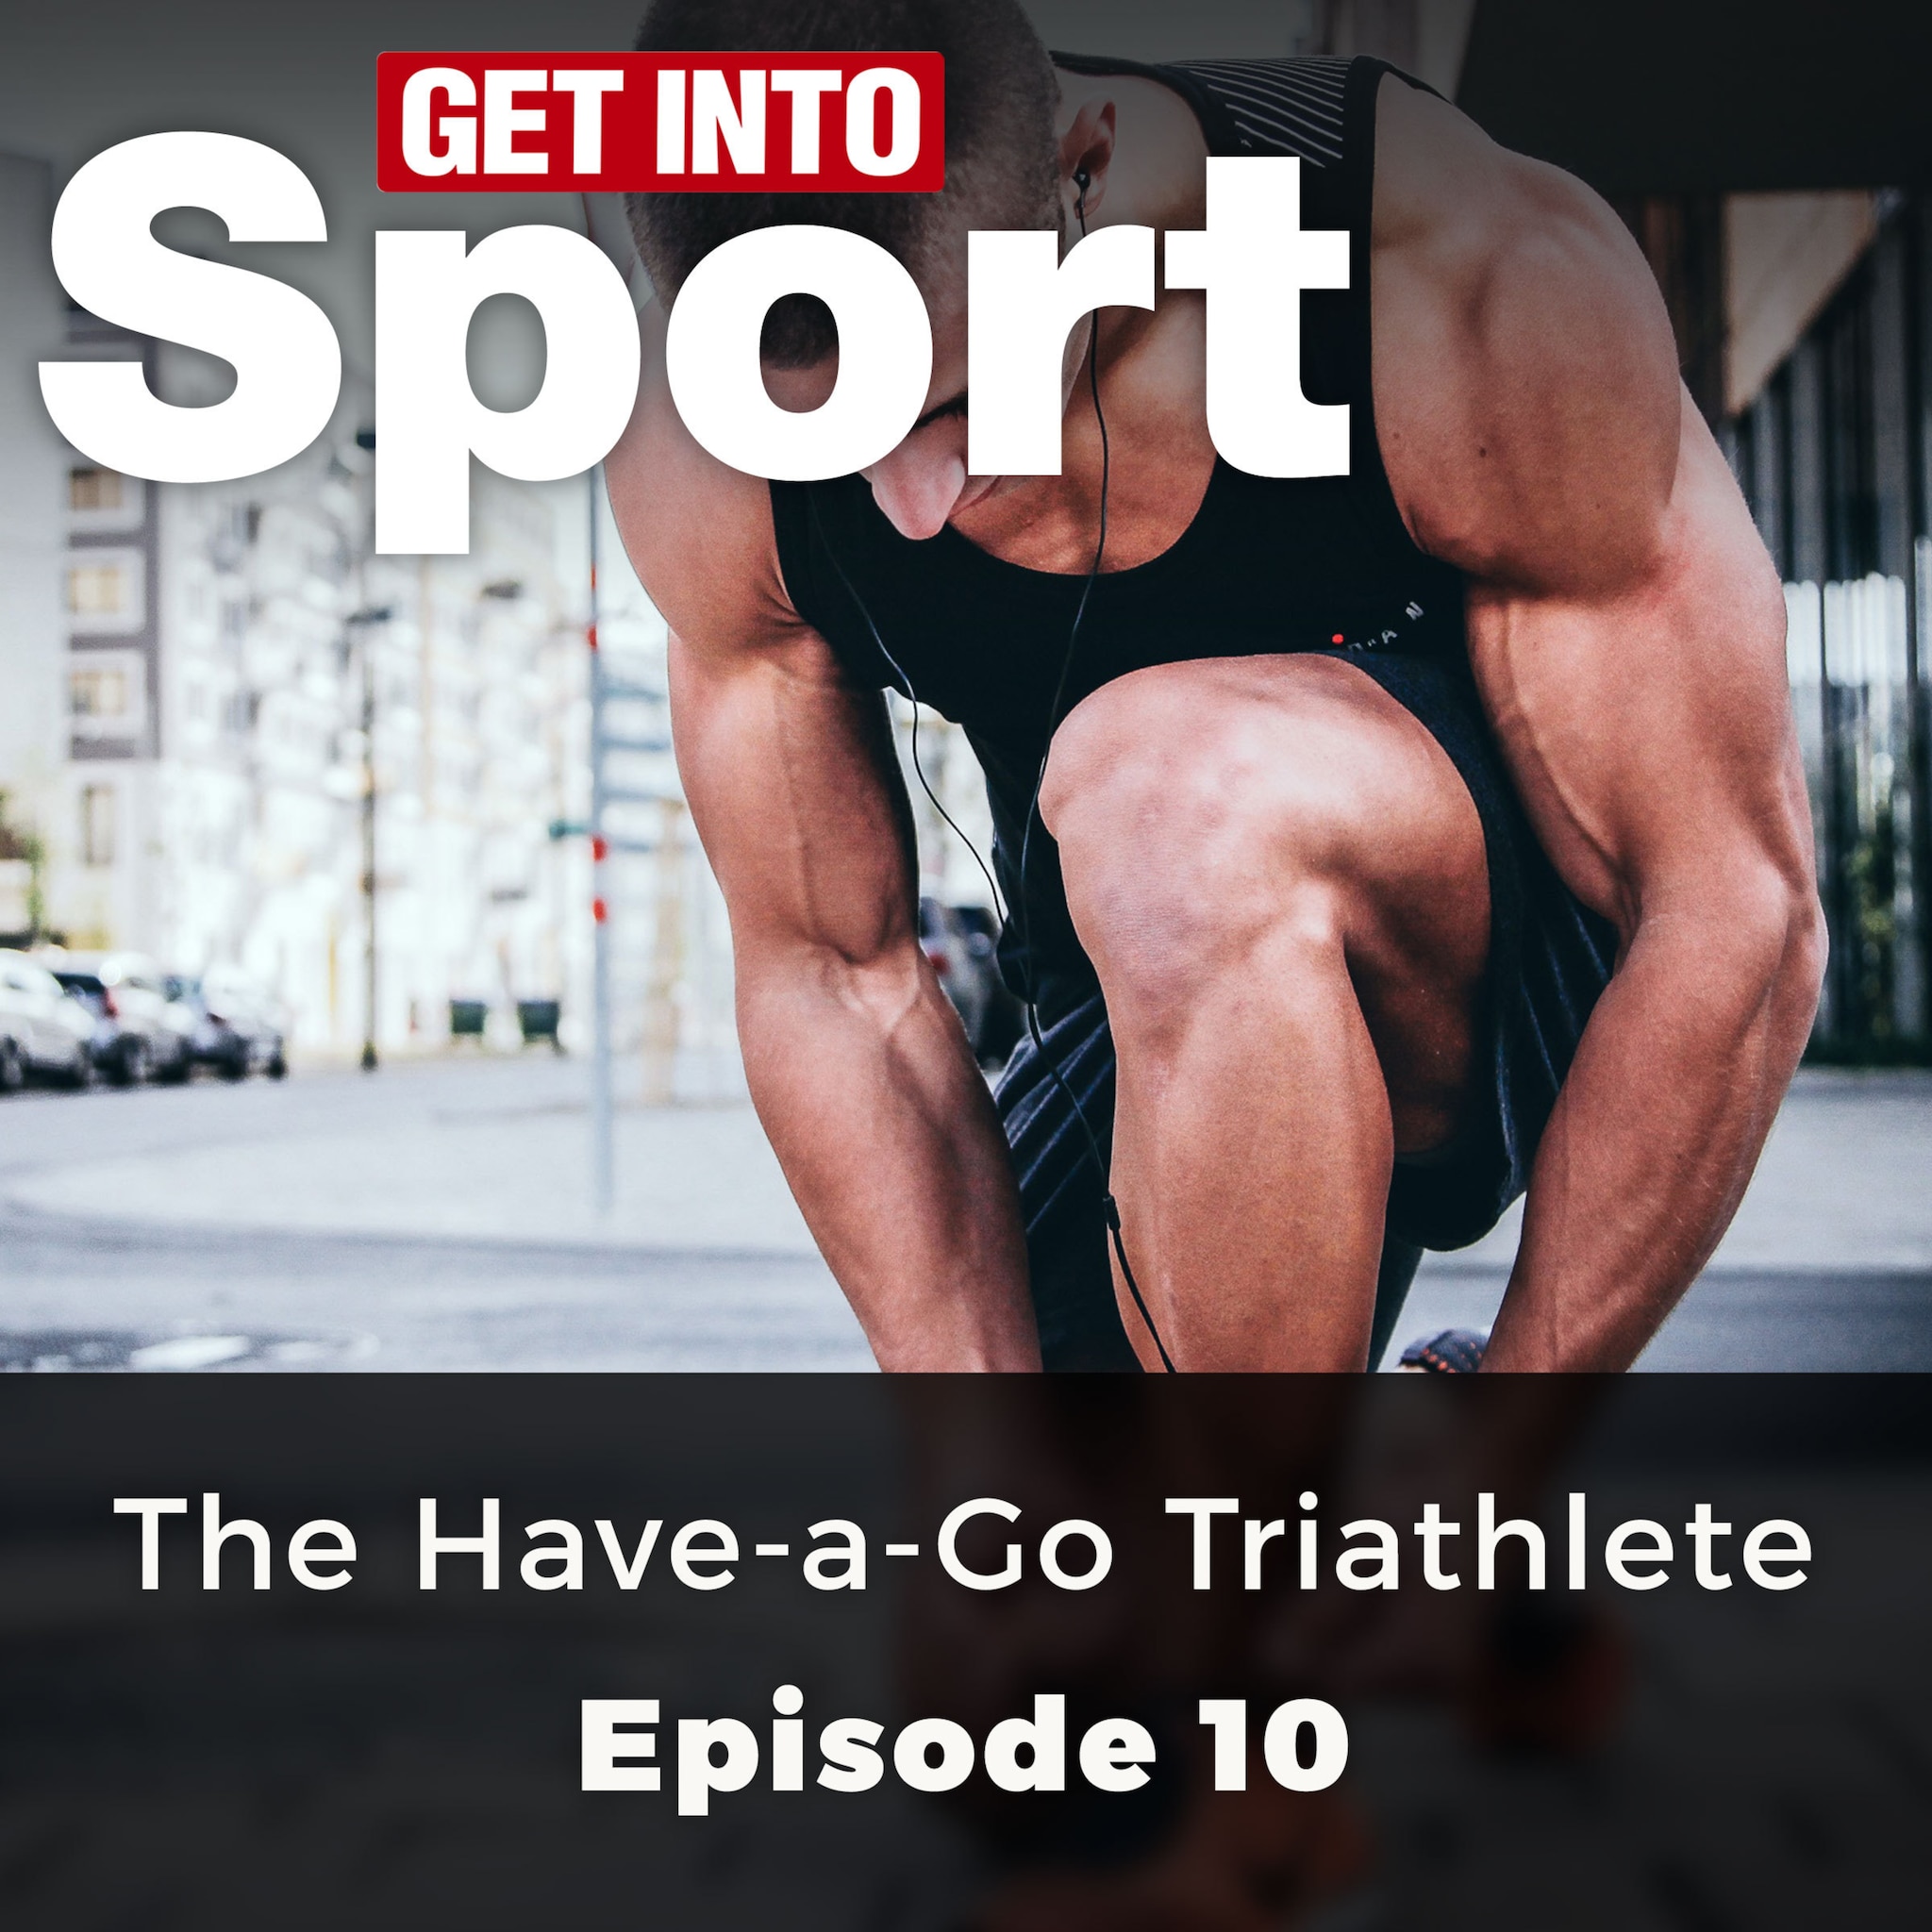 The Have-a-Go Triathlete – Get Into Sport Series, Episode 10 (ungekürzt) ilmaiseksi